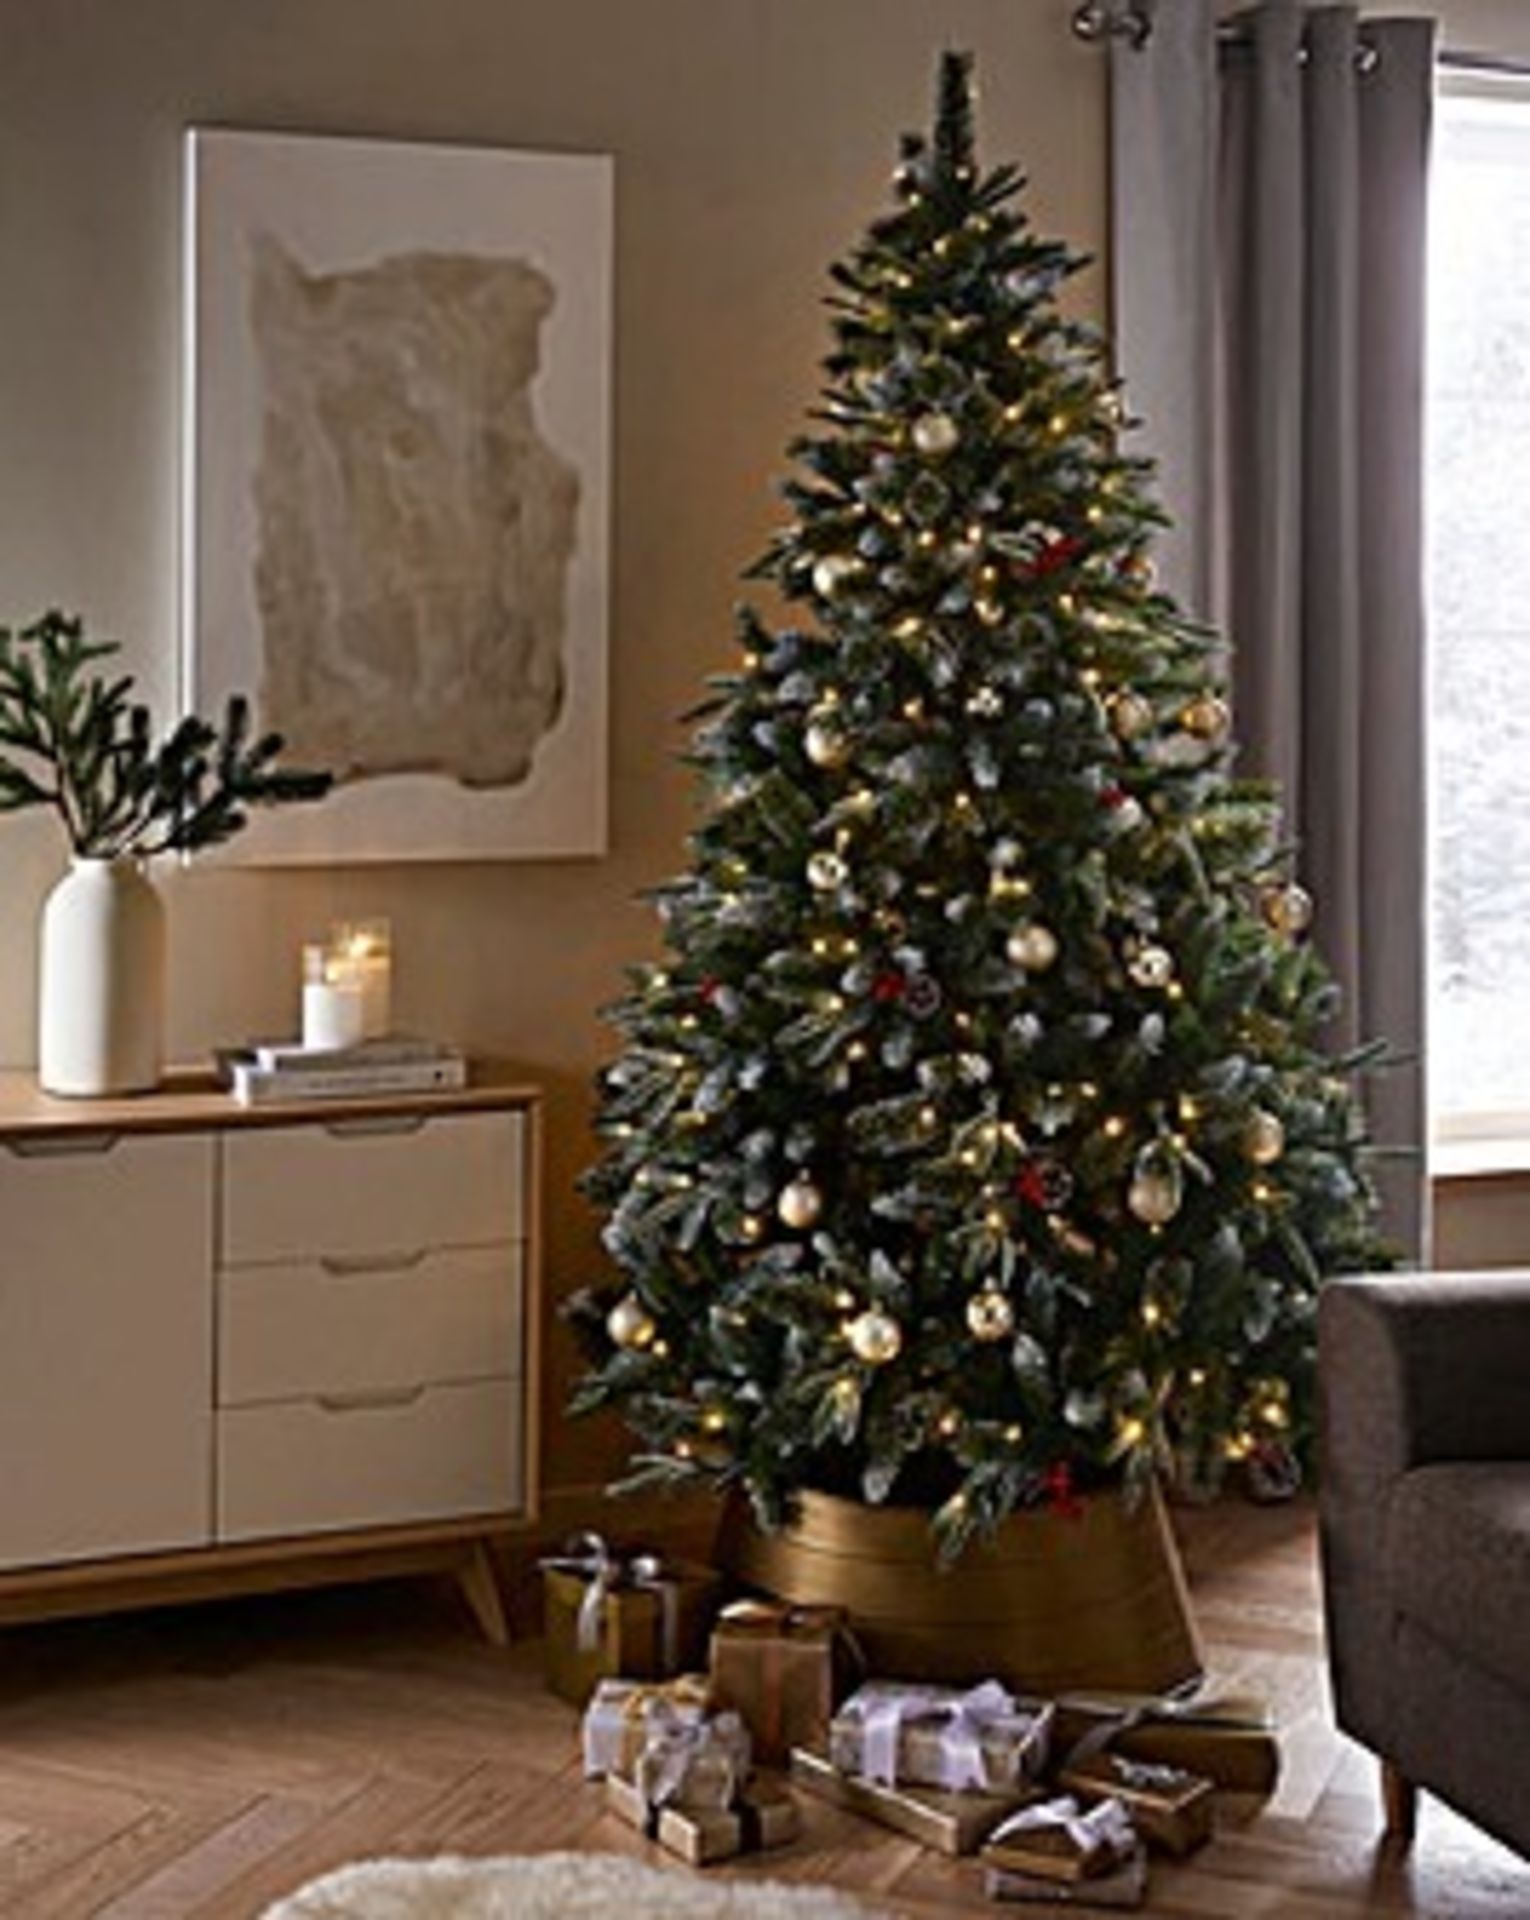 Helsinki 6ft Pre Lit Christmas Tree - ER27